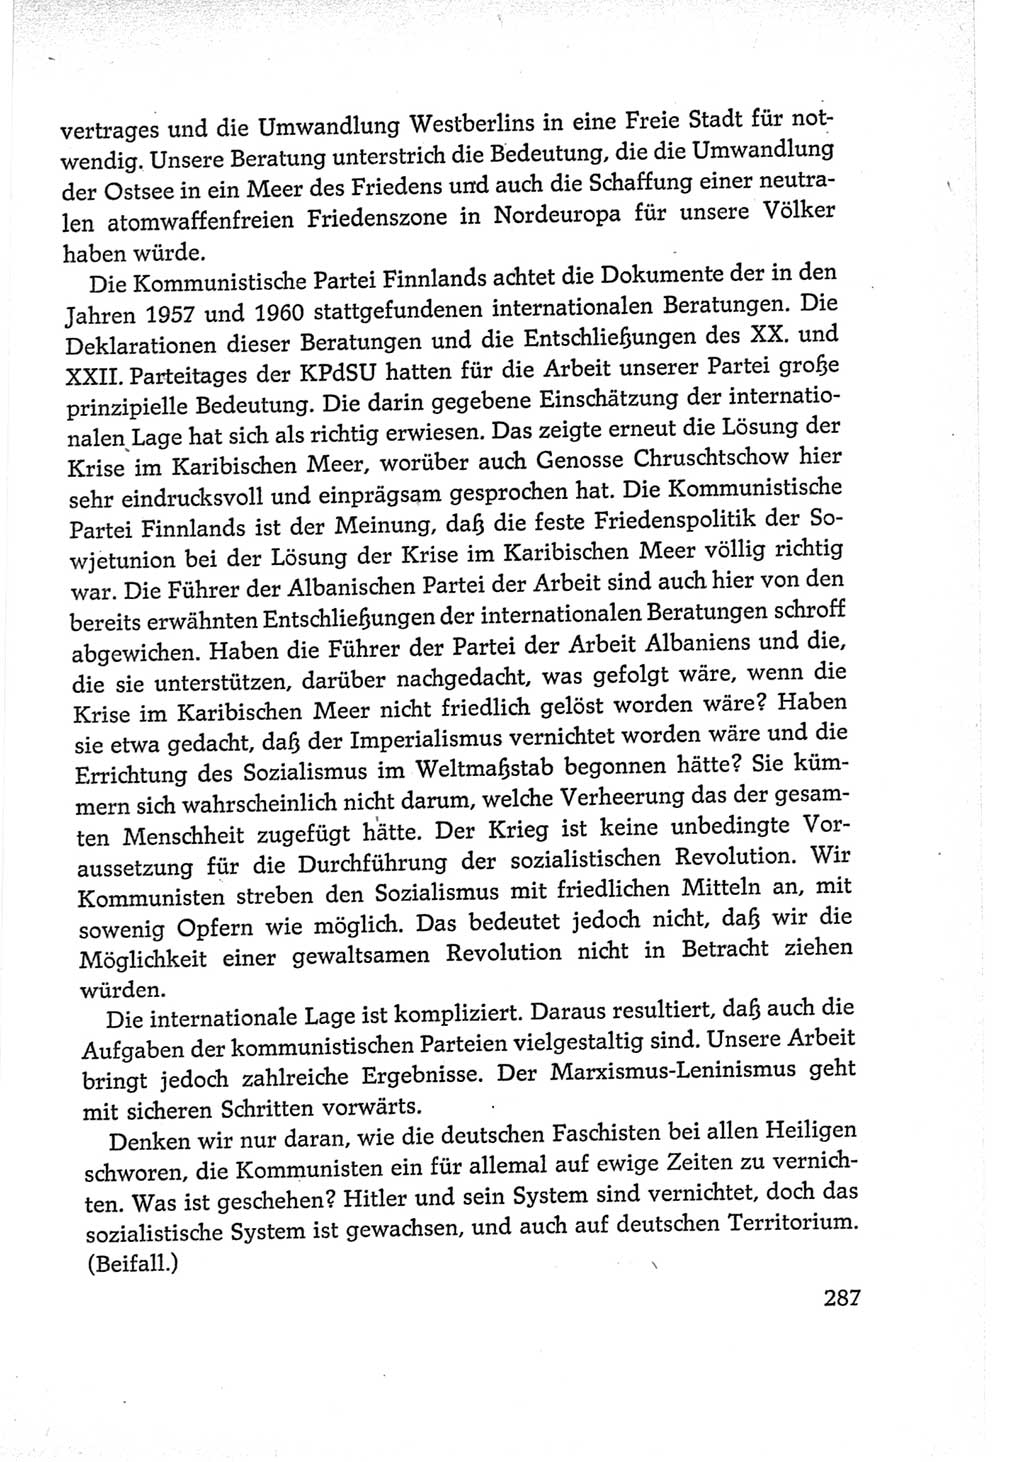 Protokoll der Verhandlungen des Ⅵ. Parteitages der Sozialistischen Einheitspartei Deutschlands (SED) [Deutsche Demokratische Republik (DDR)] 1963, Band Ⅱ, Seite 287 (Prot. Verh. Ⅵ. PT SED DDR 1963, Bd. Ⅱ, S. 287)